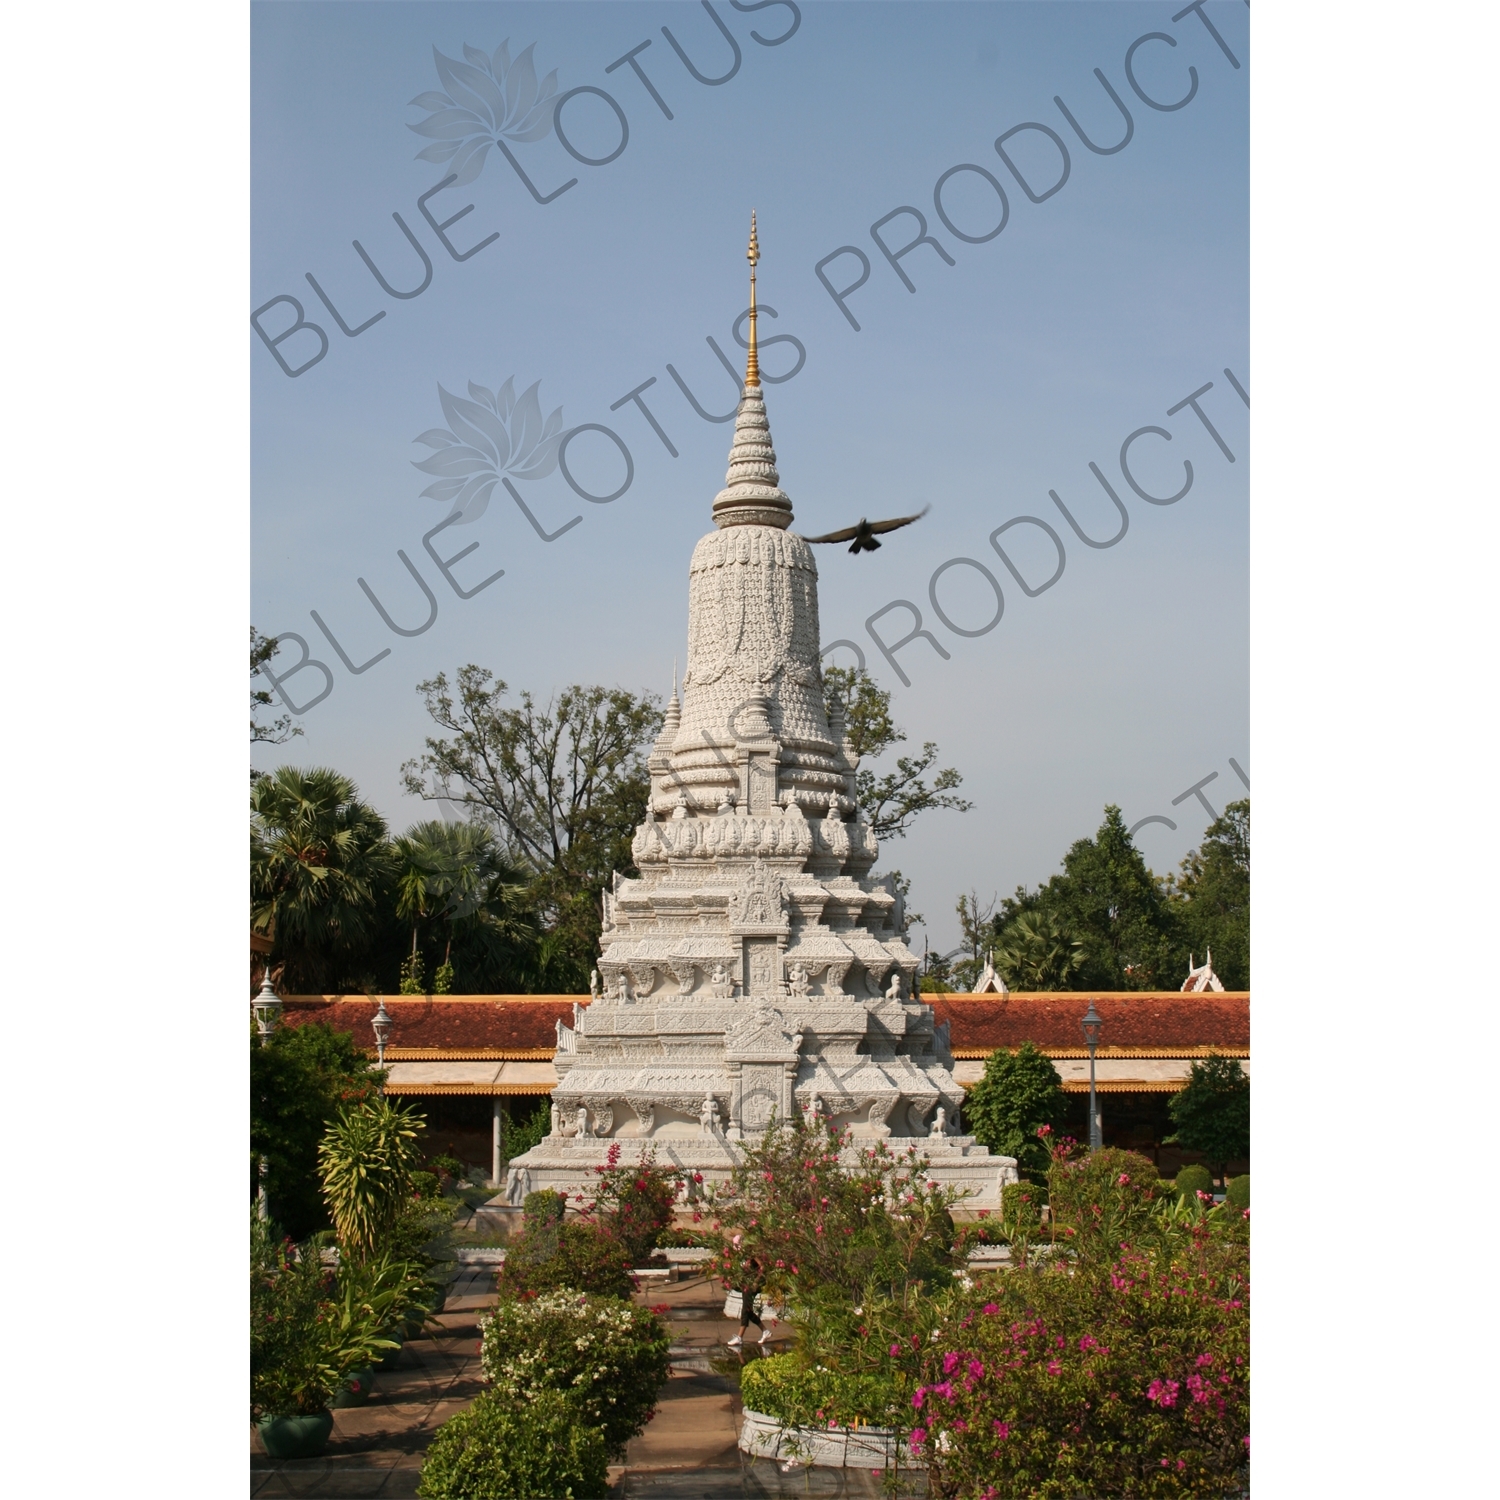 King Ang Duong's Stupa at the Royal Palace in Phnom Penh